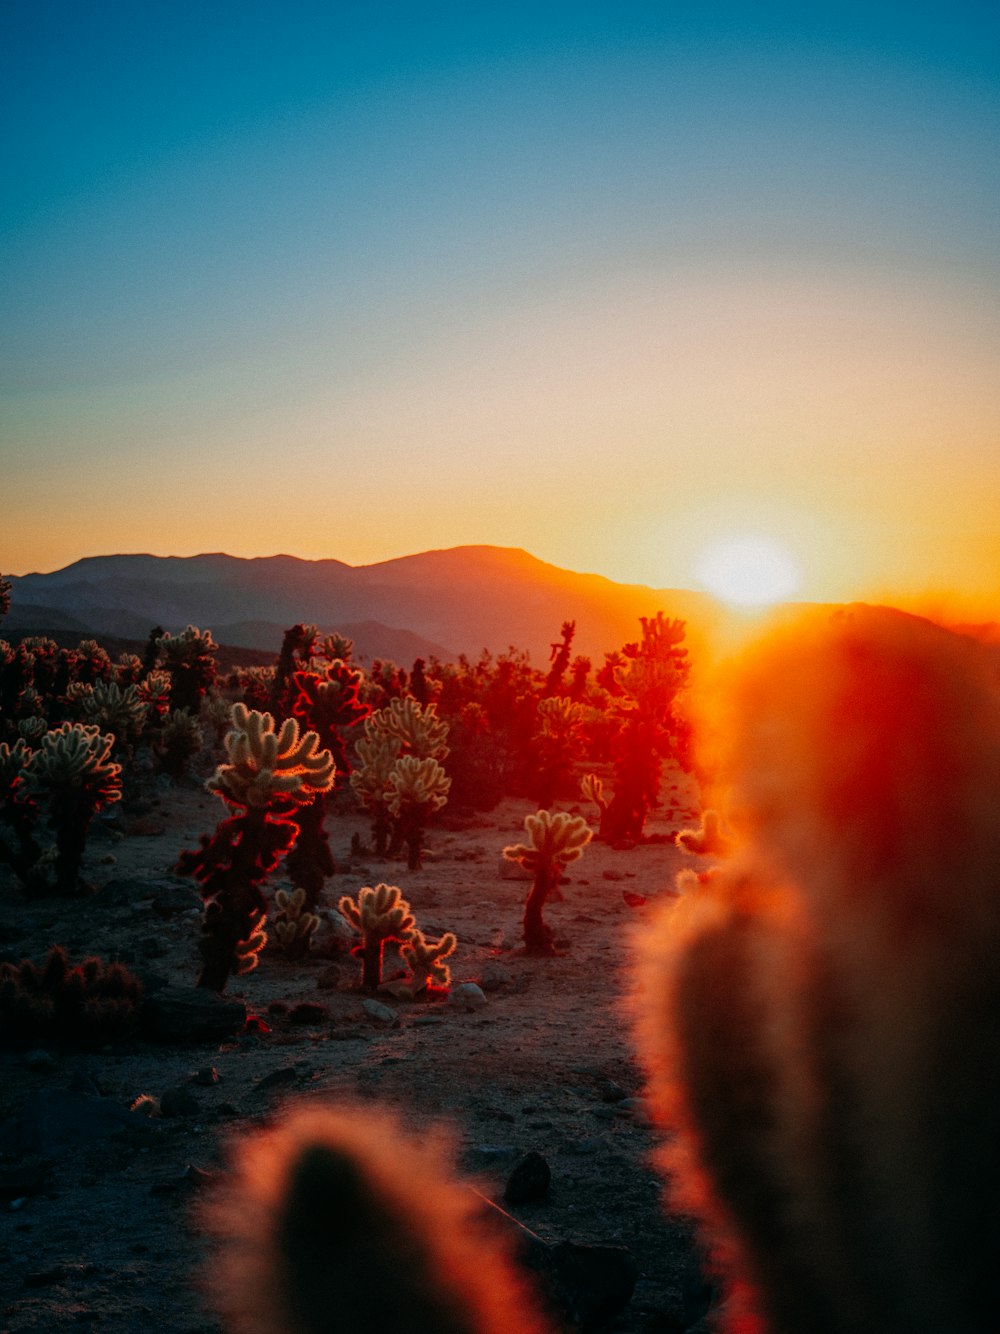 Le soleil se couche sur un désert avec des cactus